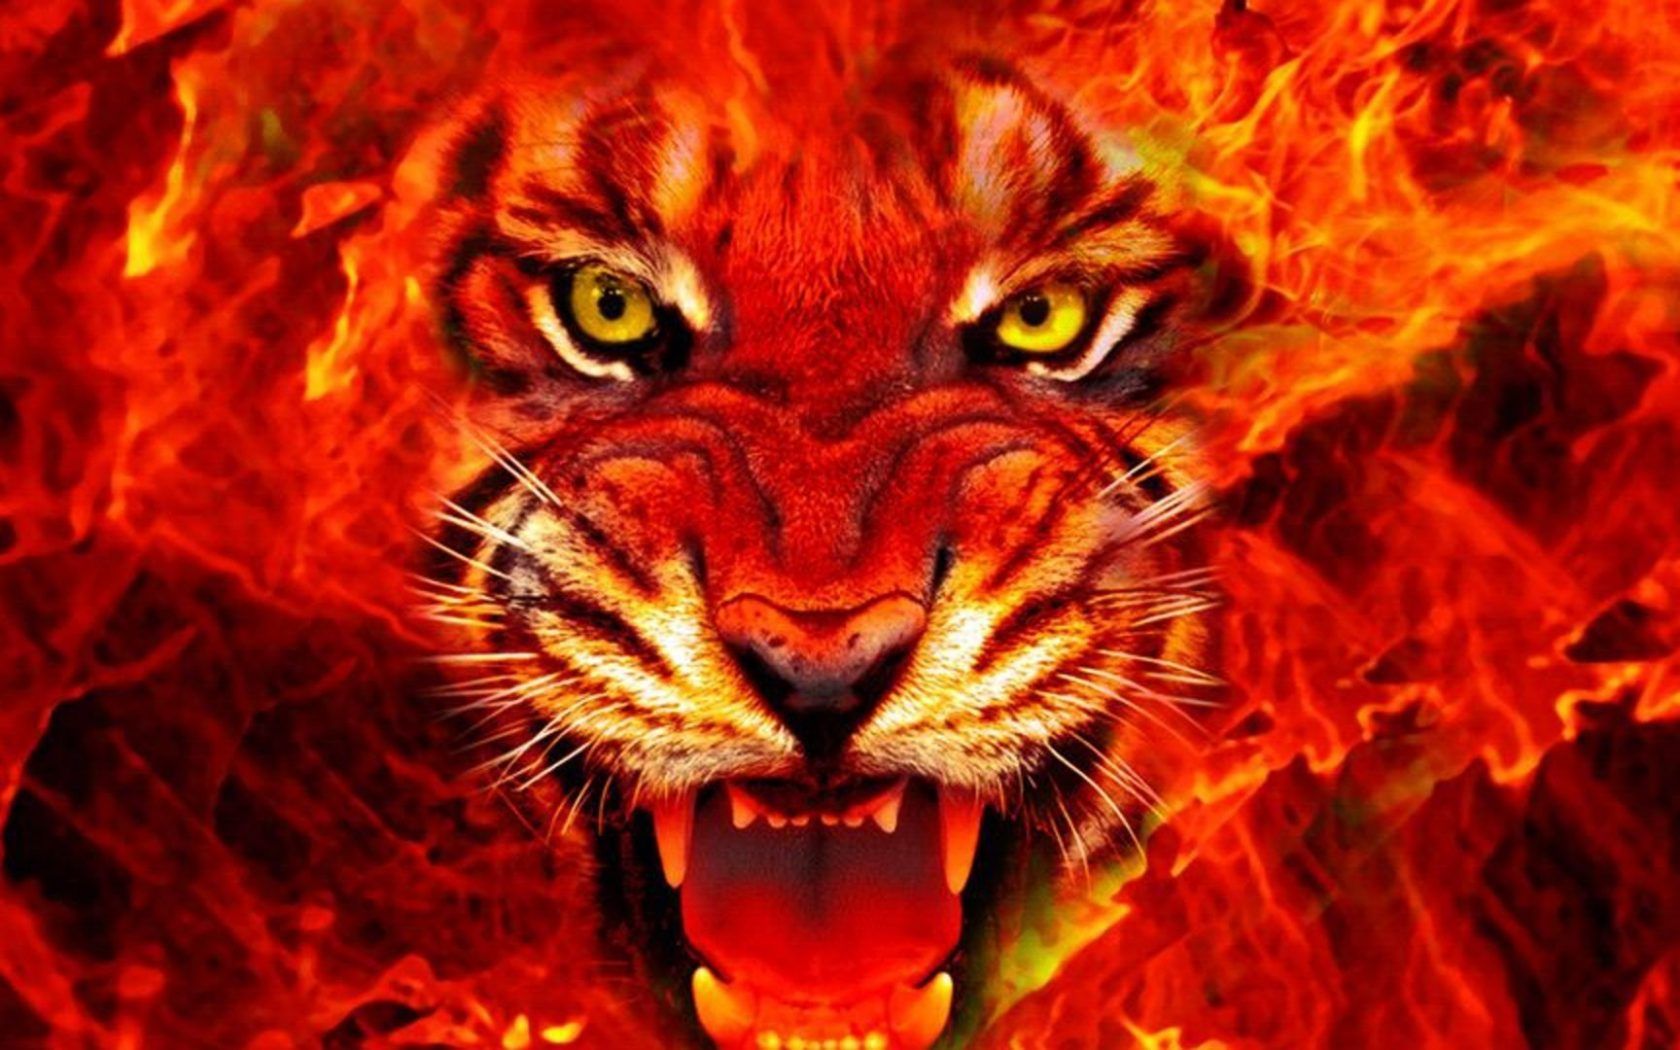 Animal Tiger Face Fire 4k Ultra HD .wallpaper13.com